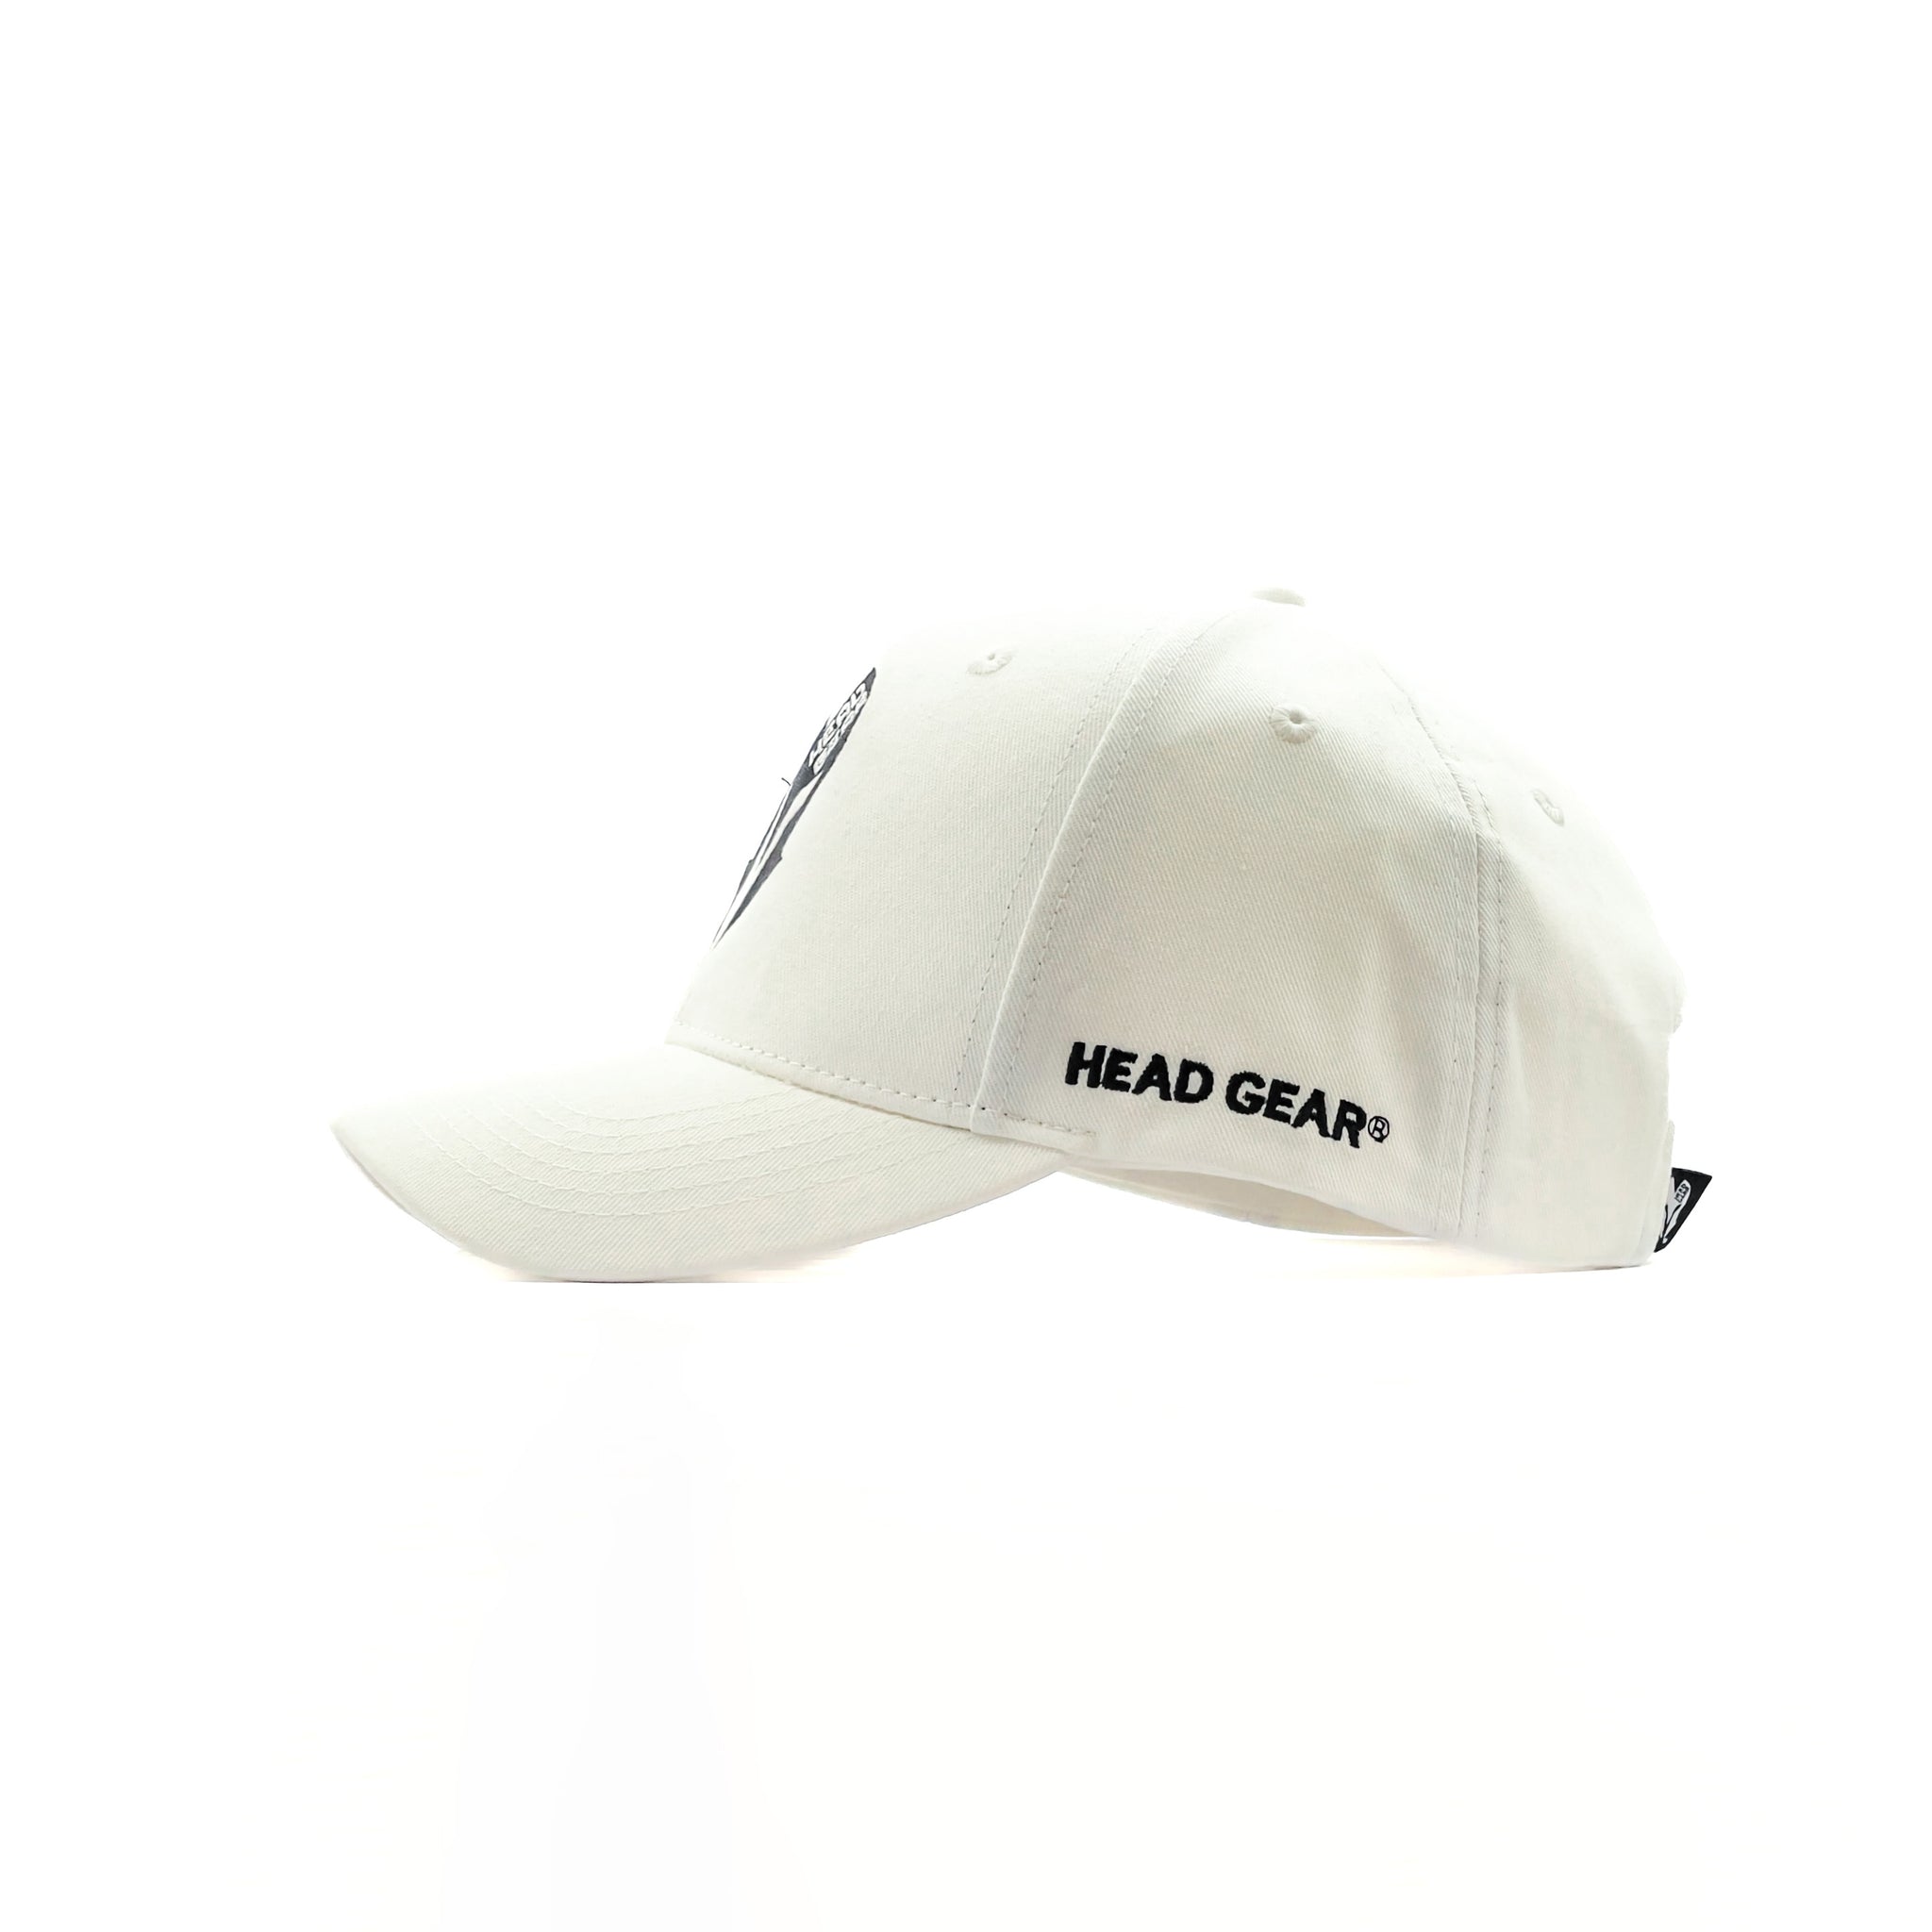 HEAD GEAR OFFICIAL WHITE CAP